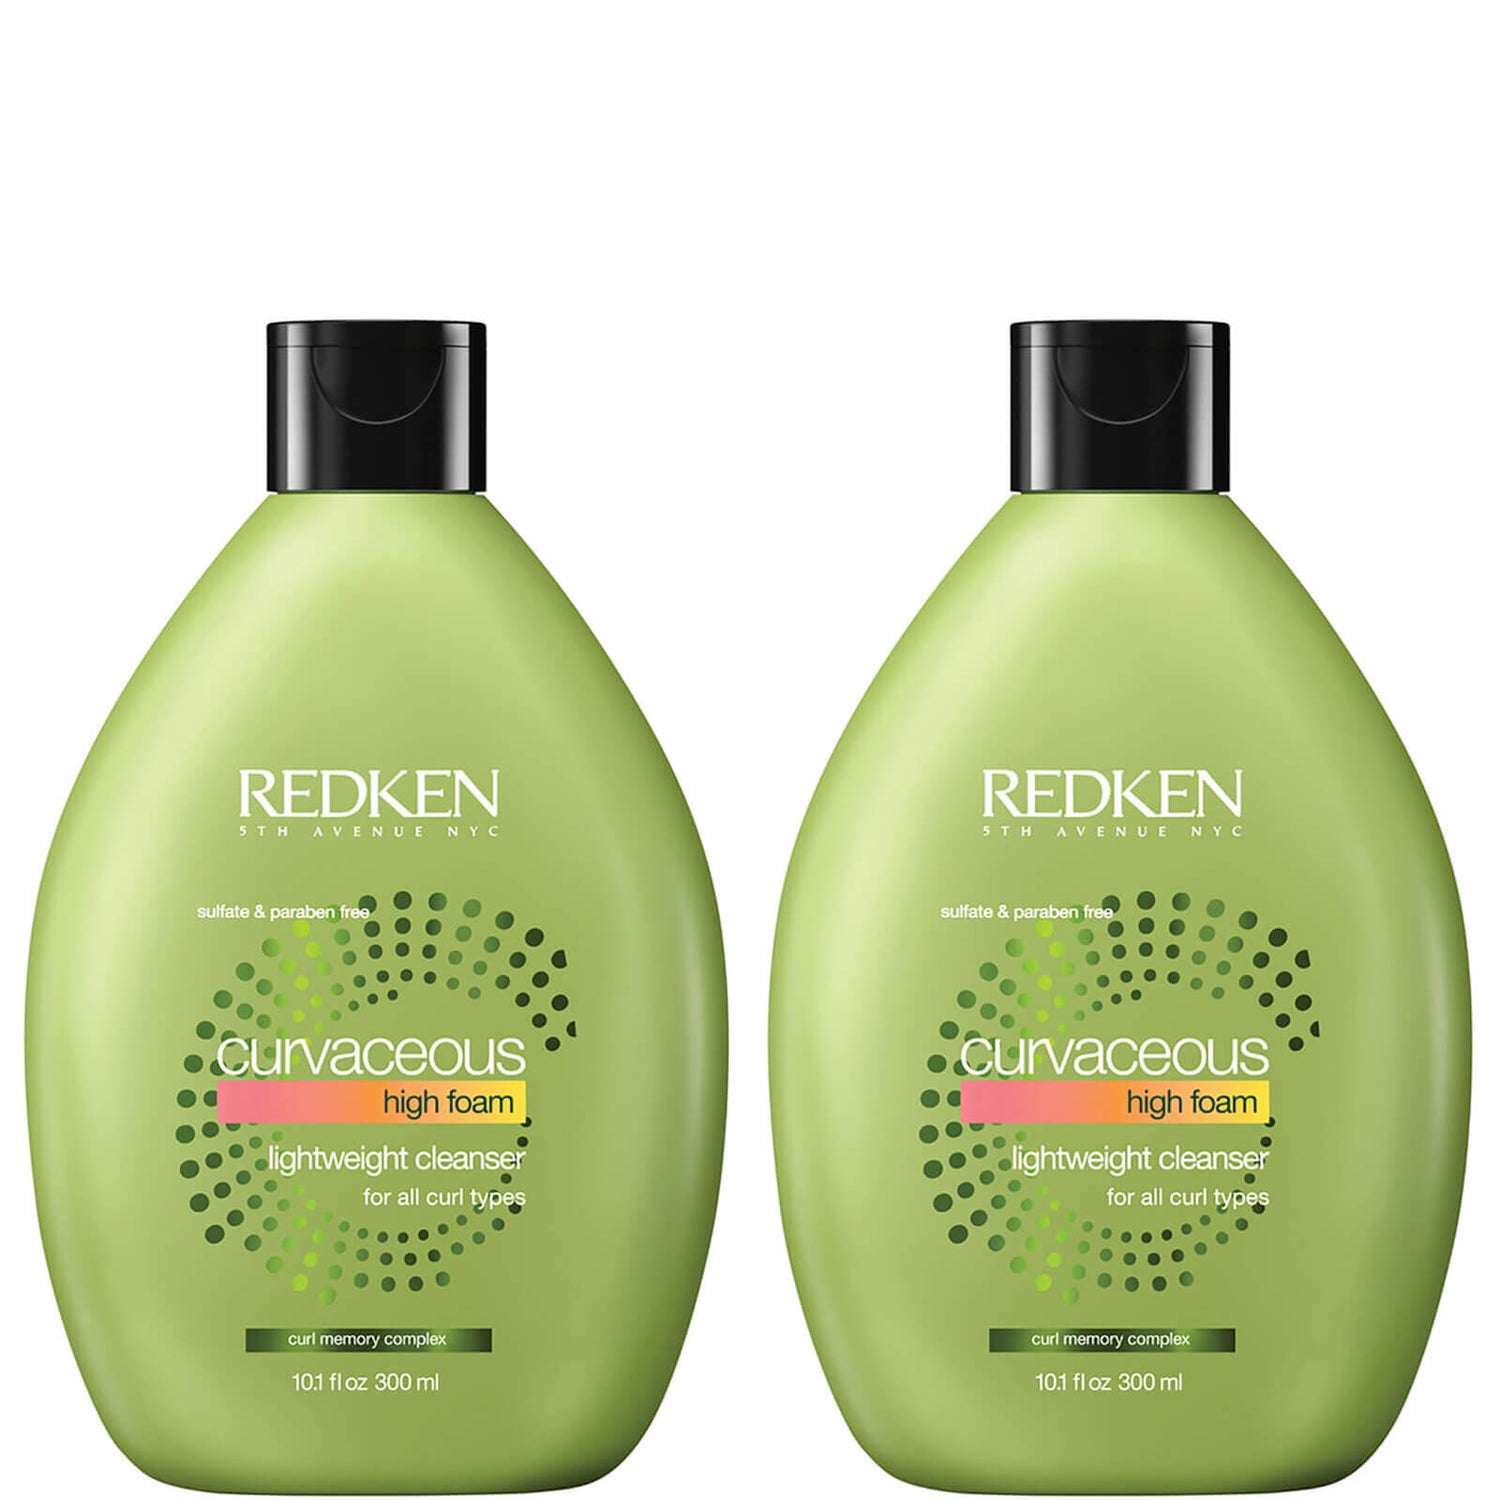 Redken Curvaceous High Foam Shampoo Duo szampon w piance do włosów - zestaw 2 sztuk (2 x 300 ml)